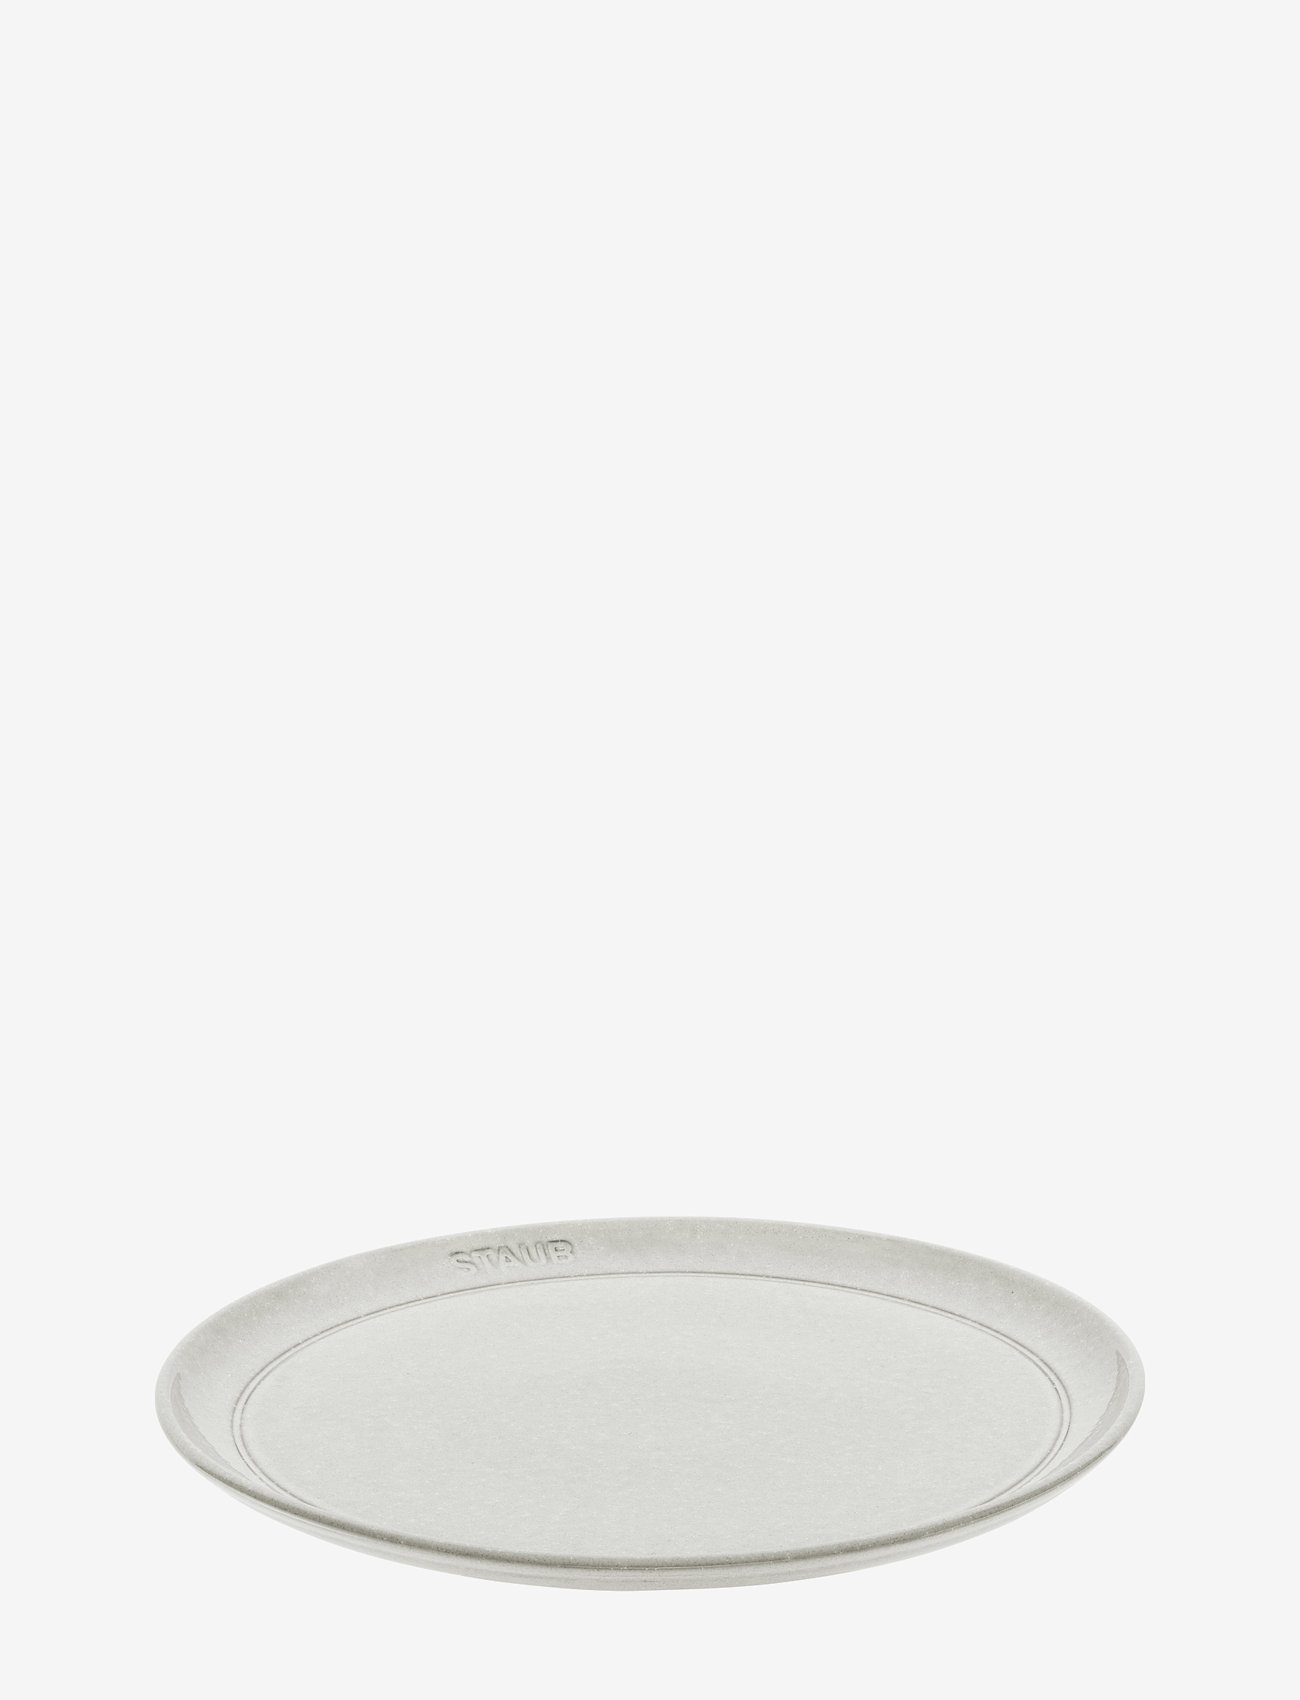 STAUB - Lautas 26 cm, valkoinen tryffeli - alhaisimmat hinnat - grey - 0